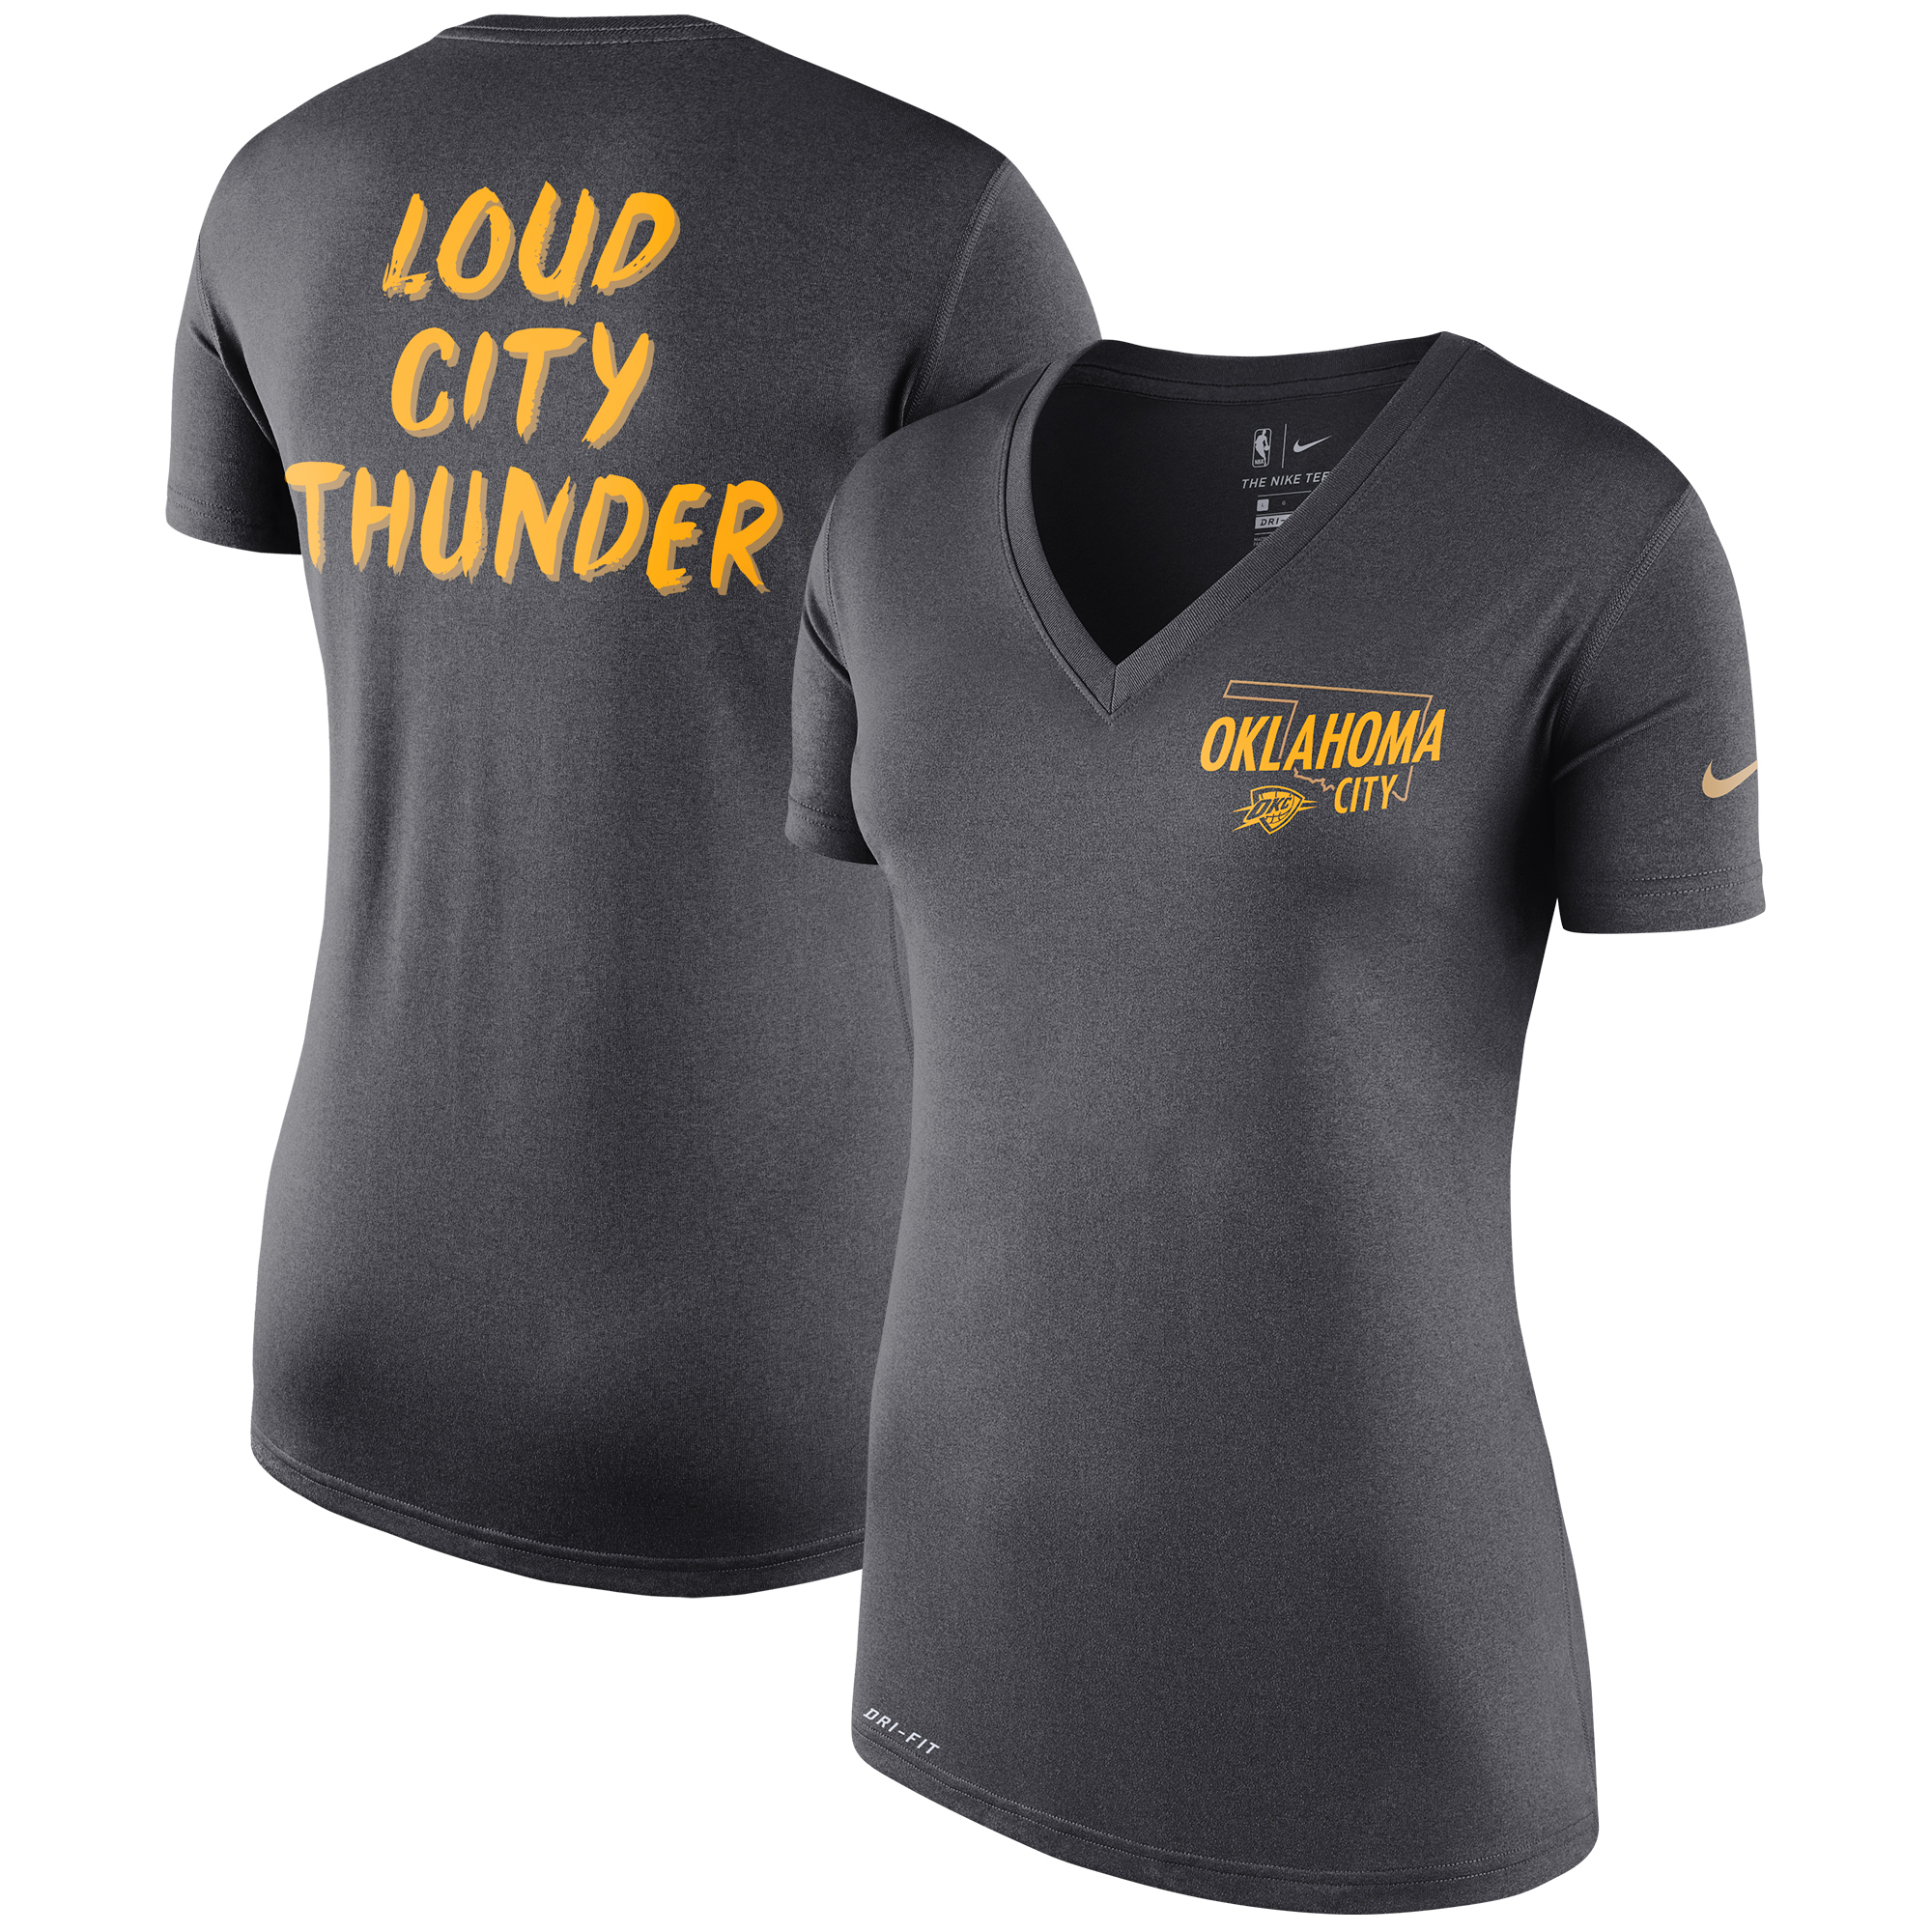 Oklahoma City Thunder Nike Women's 2019/20 City Edition Performance ...